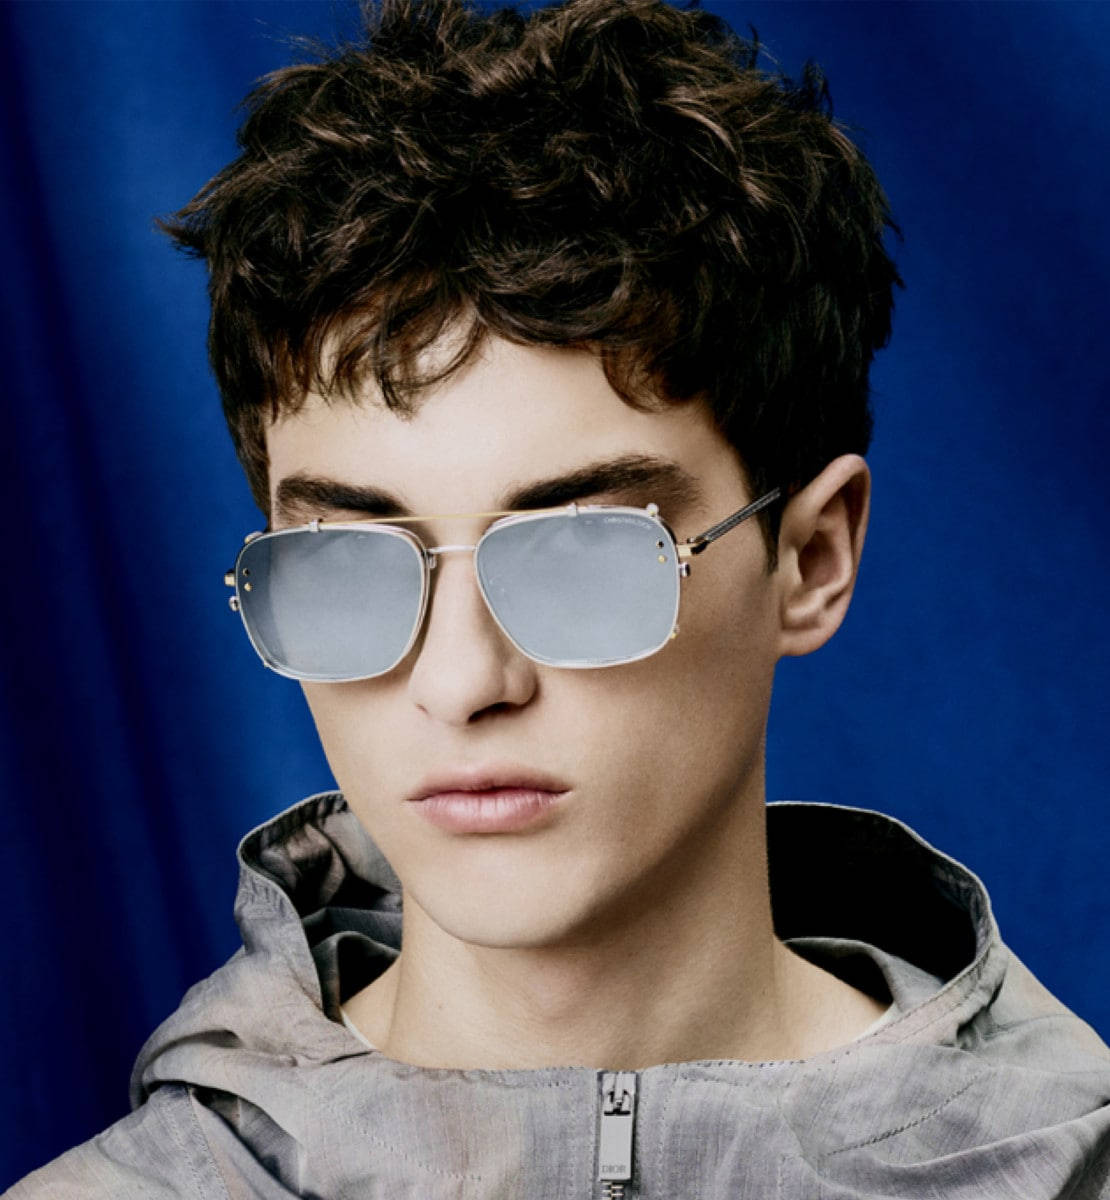 Christian Dior Silver Sunglasses Picture